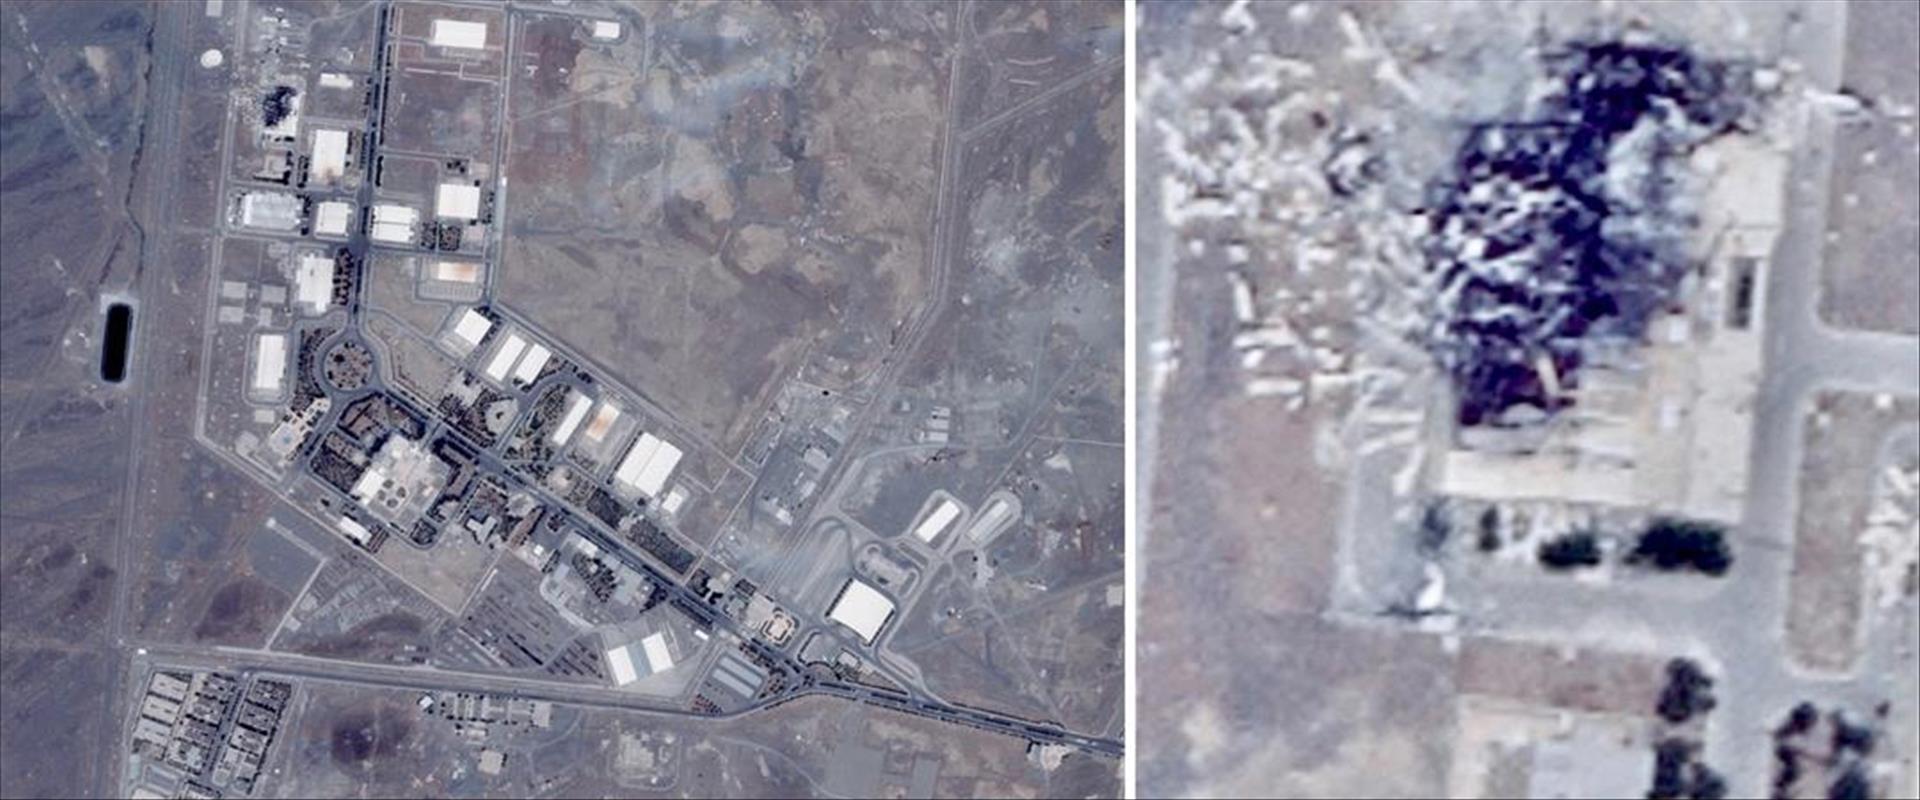 צילומי לווין של אתר הגרעין בנתנז לאחר הפיצוץ